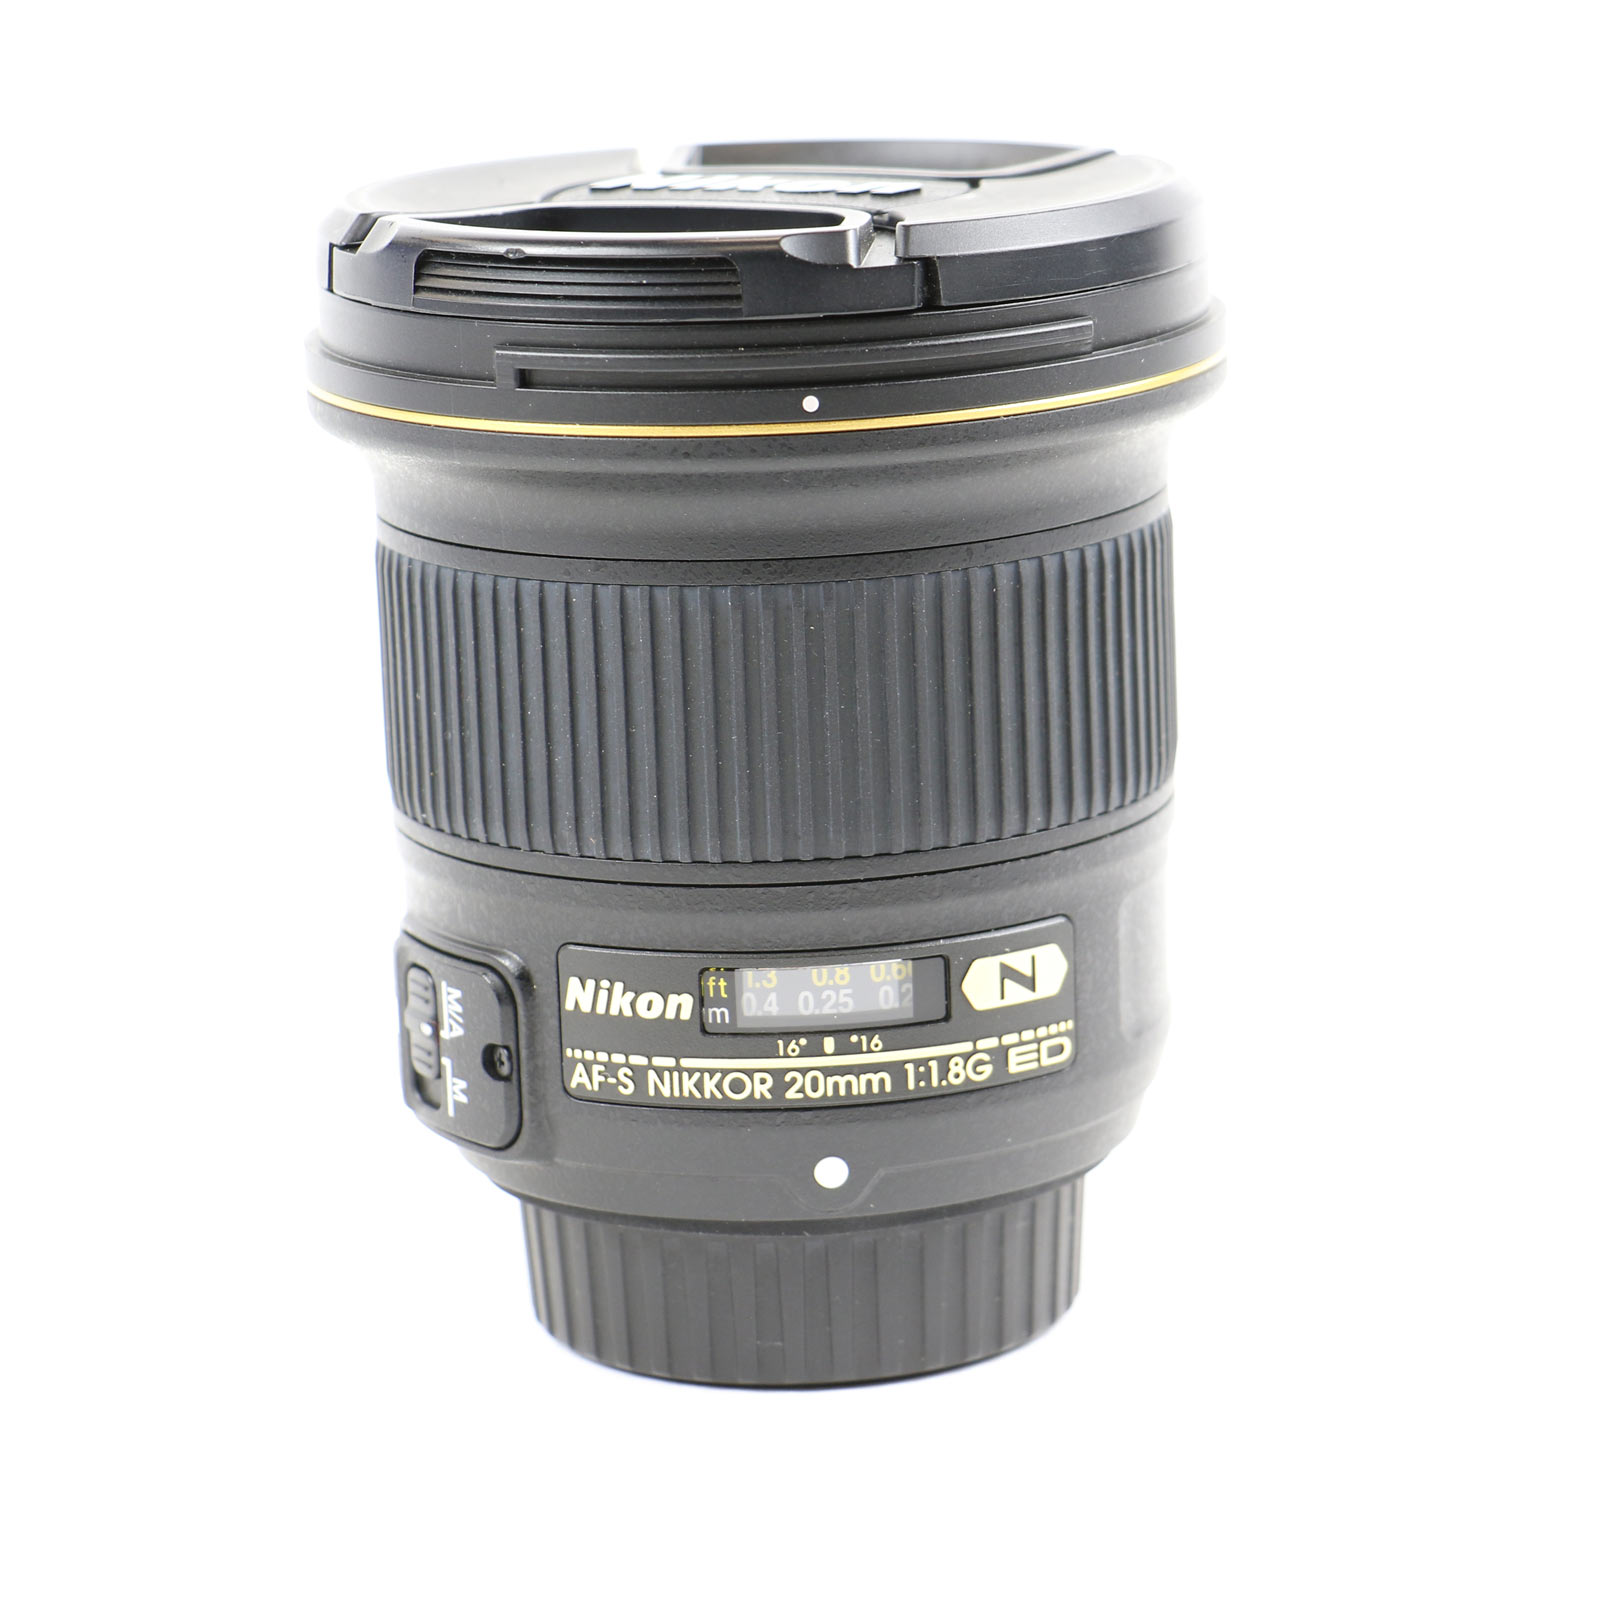 Nikon 20mm f1.8G AF-S NIKKOR ED Lens | Wex Photo Video